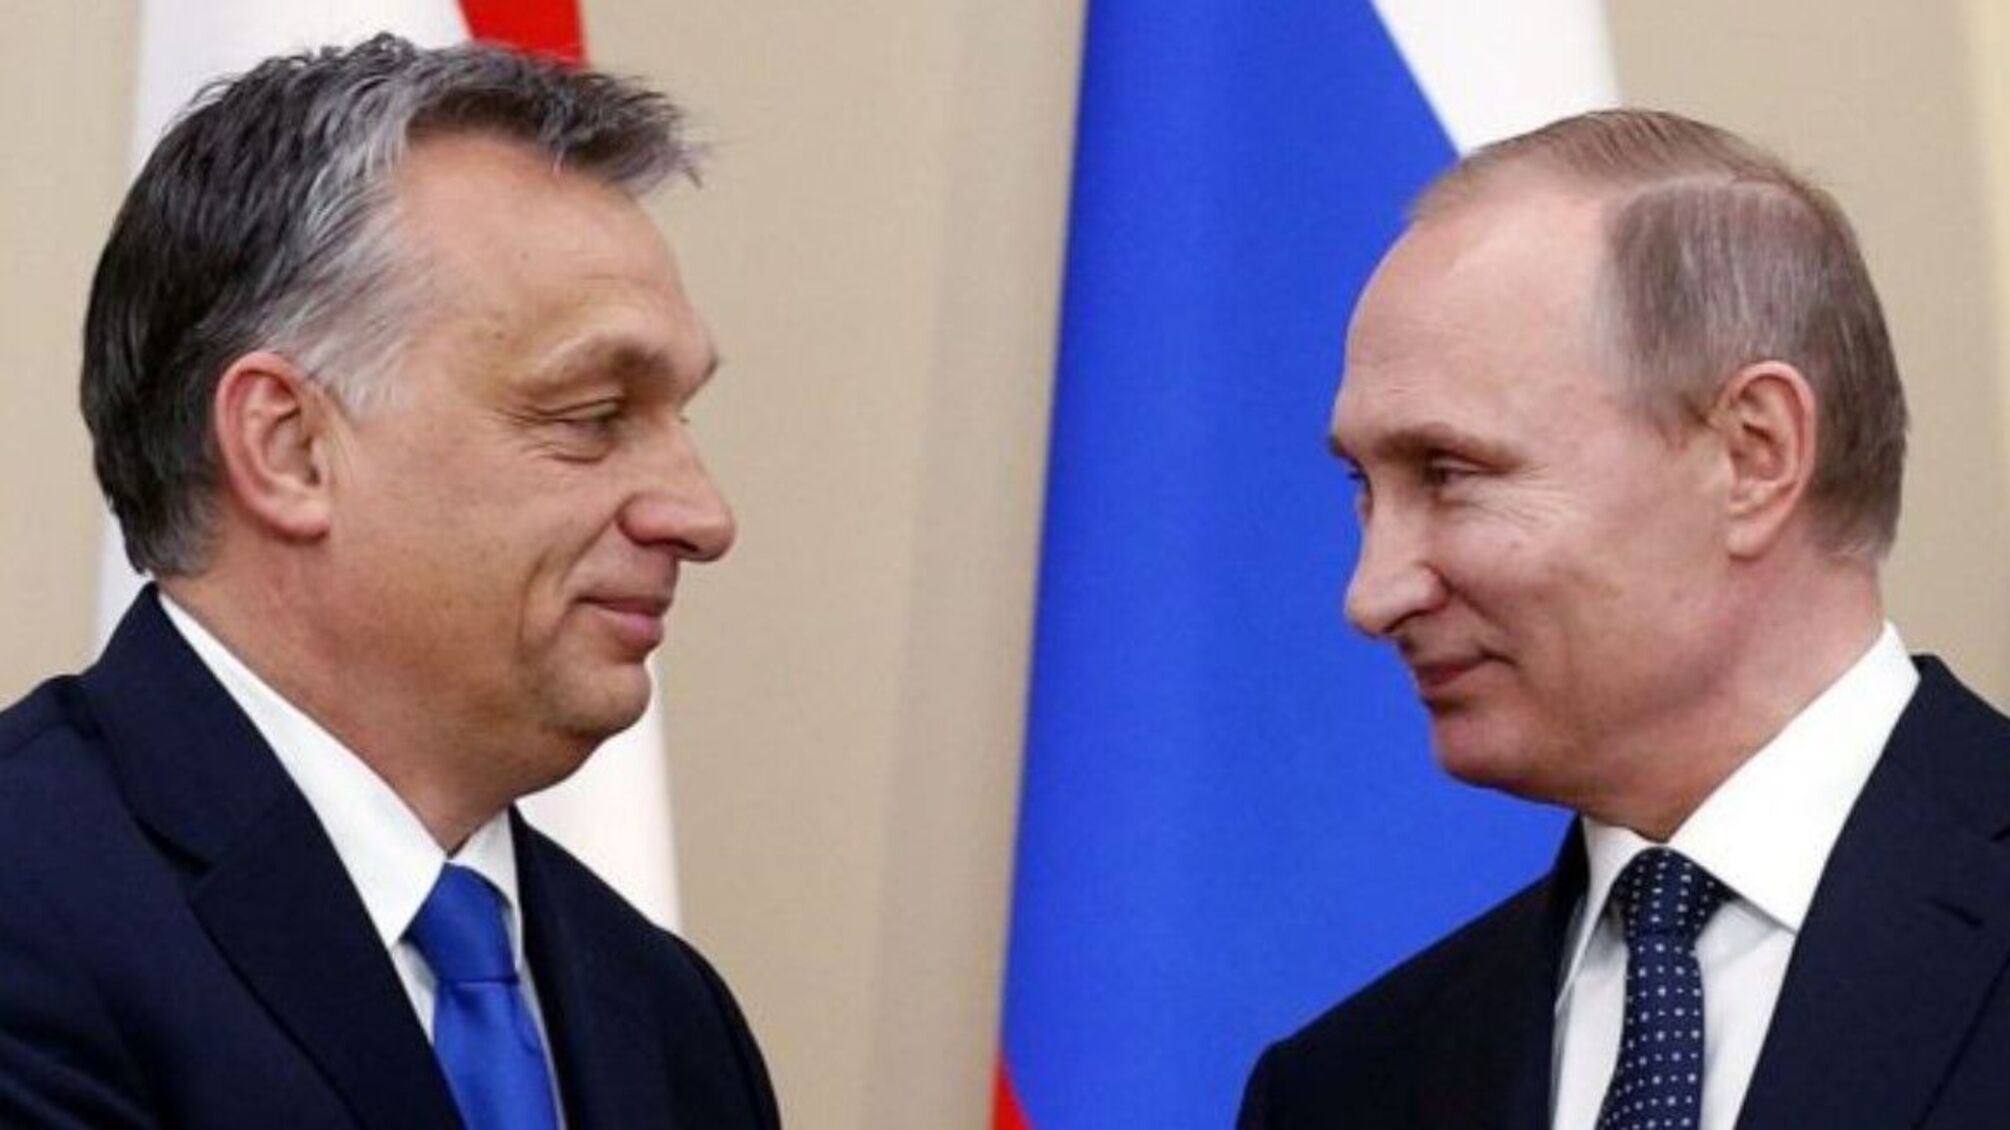 Венгрия возмущена: предупреждение рф о нападении на Украину - лживая клевета